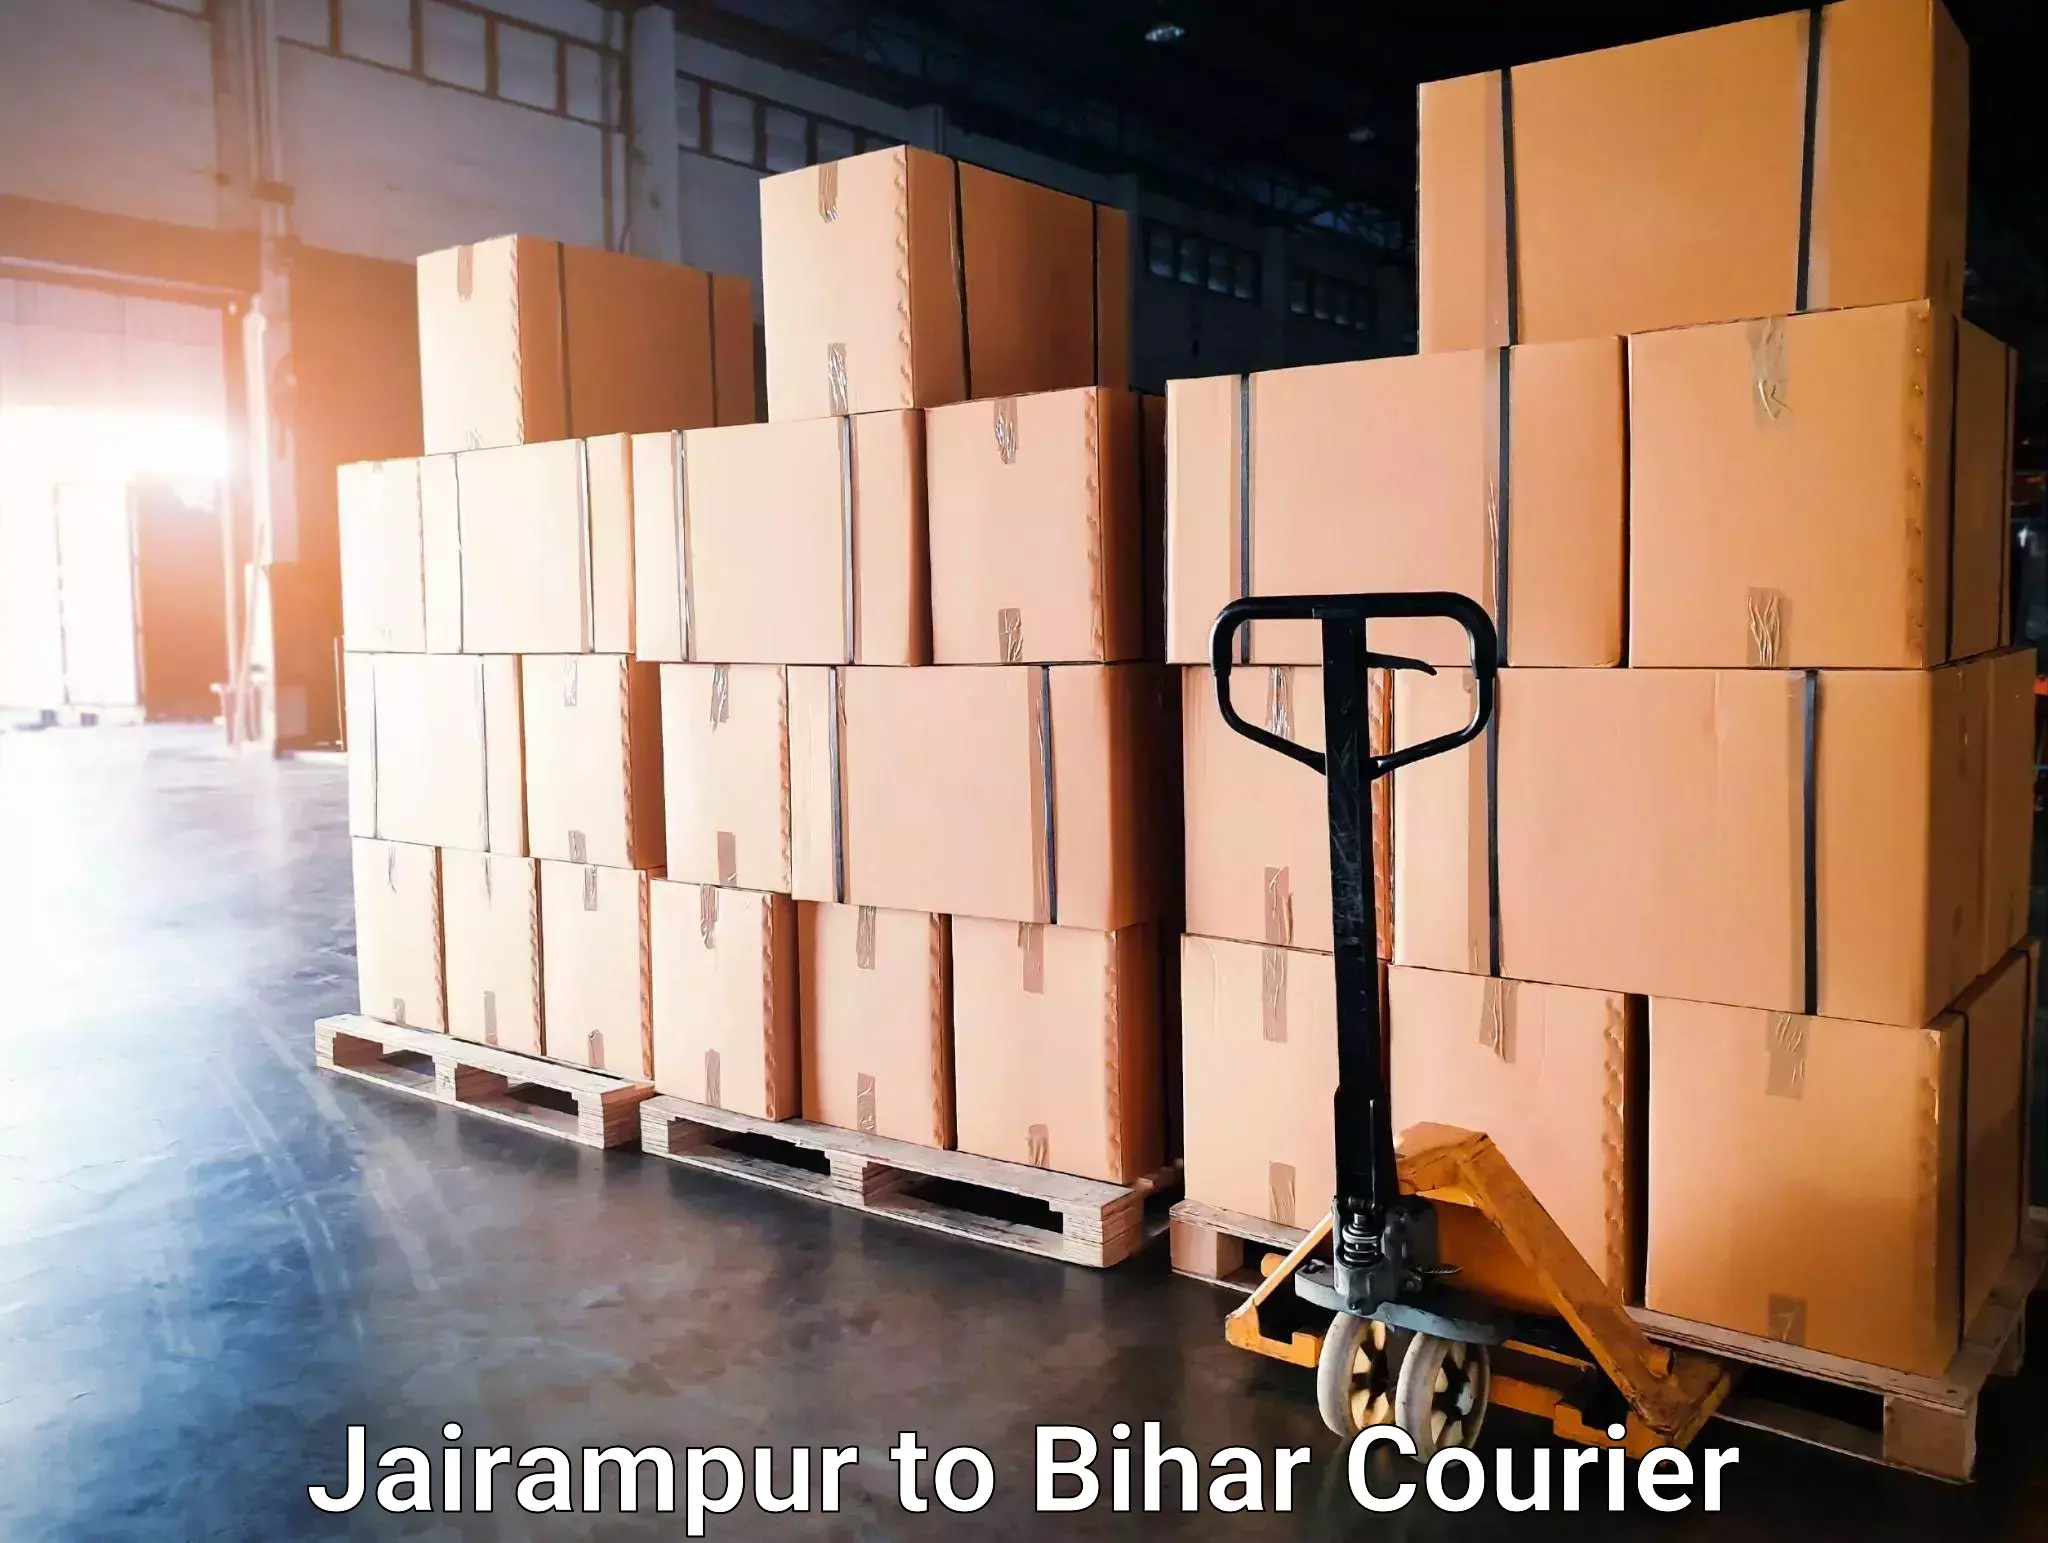 Speedy delivery service Jairampur to Mahnar Bazar